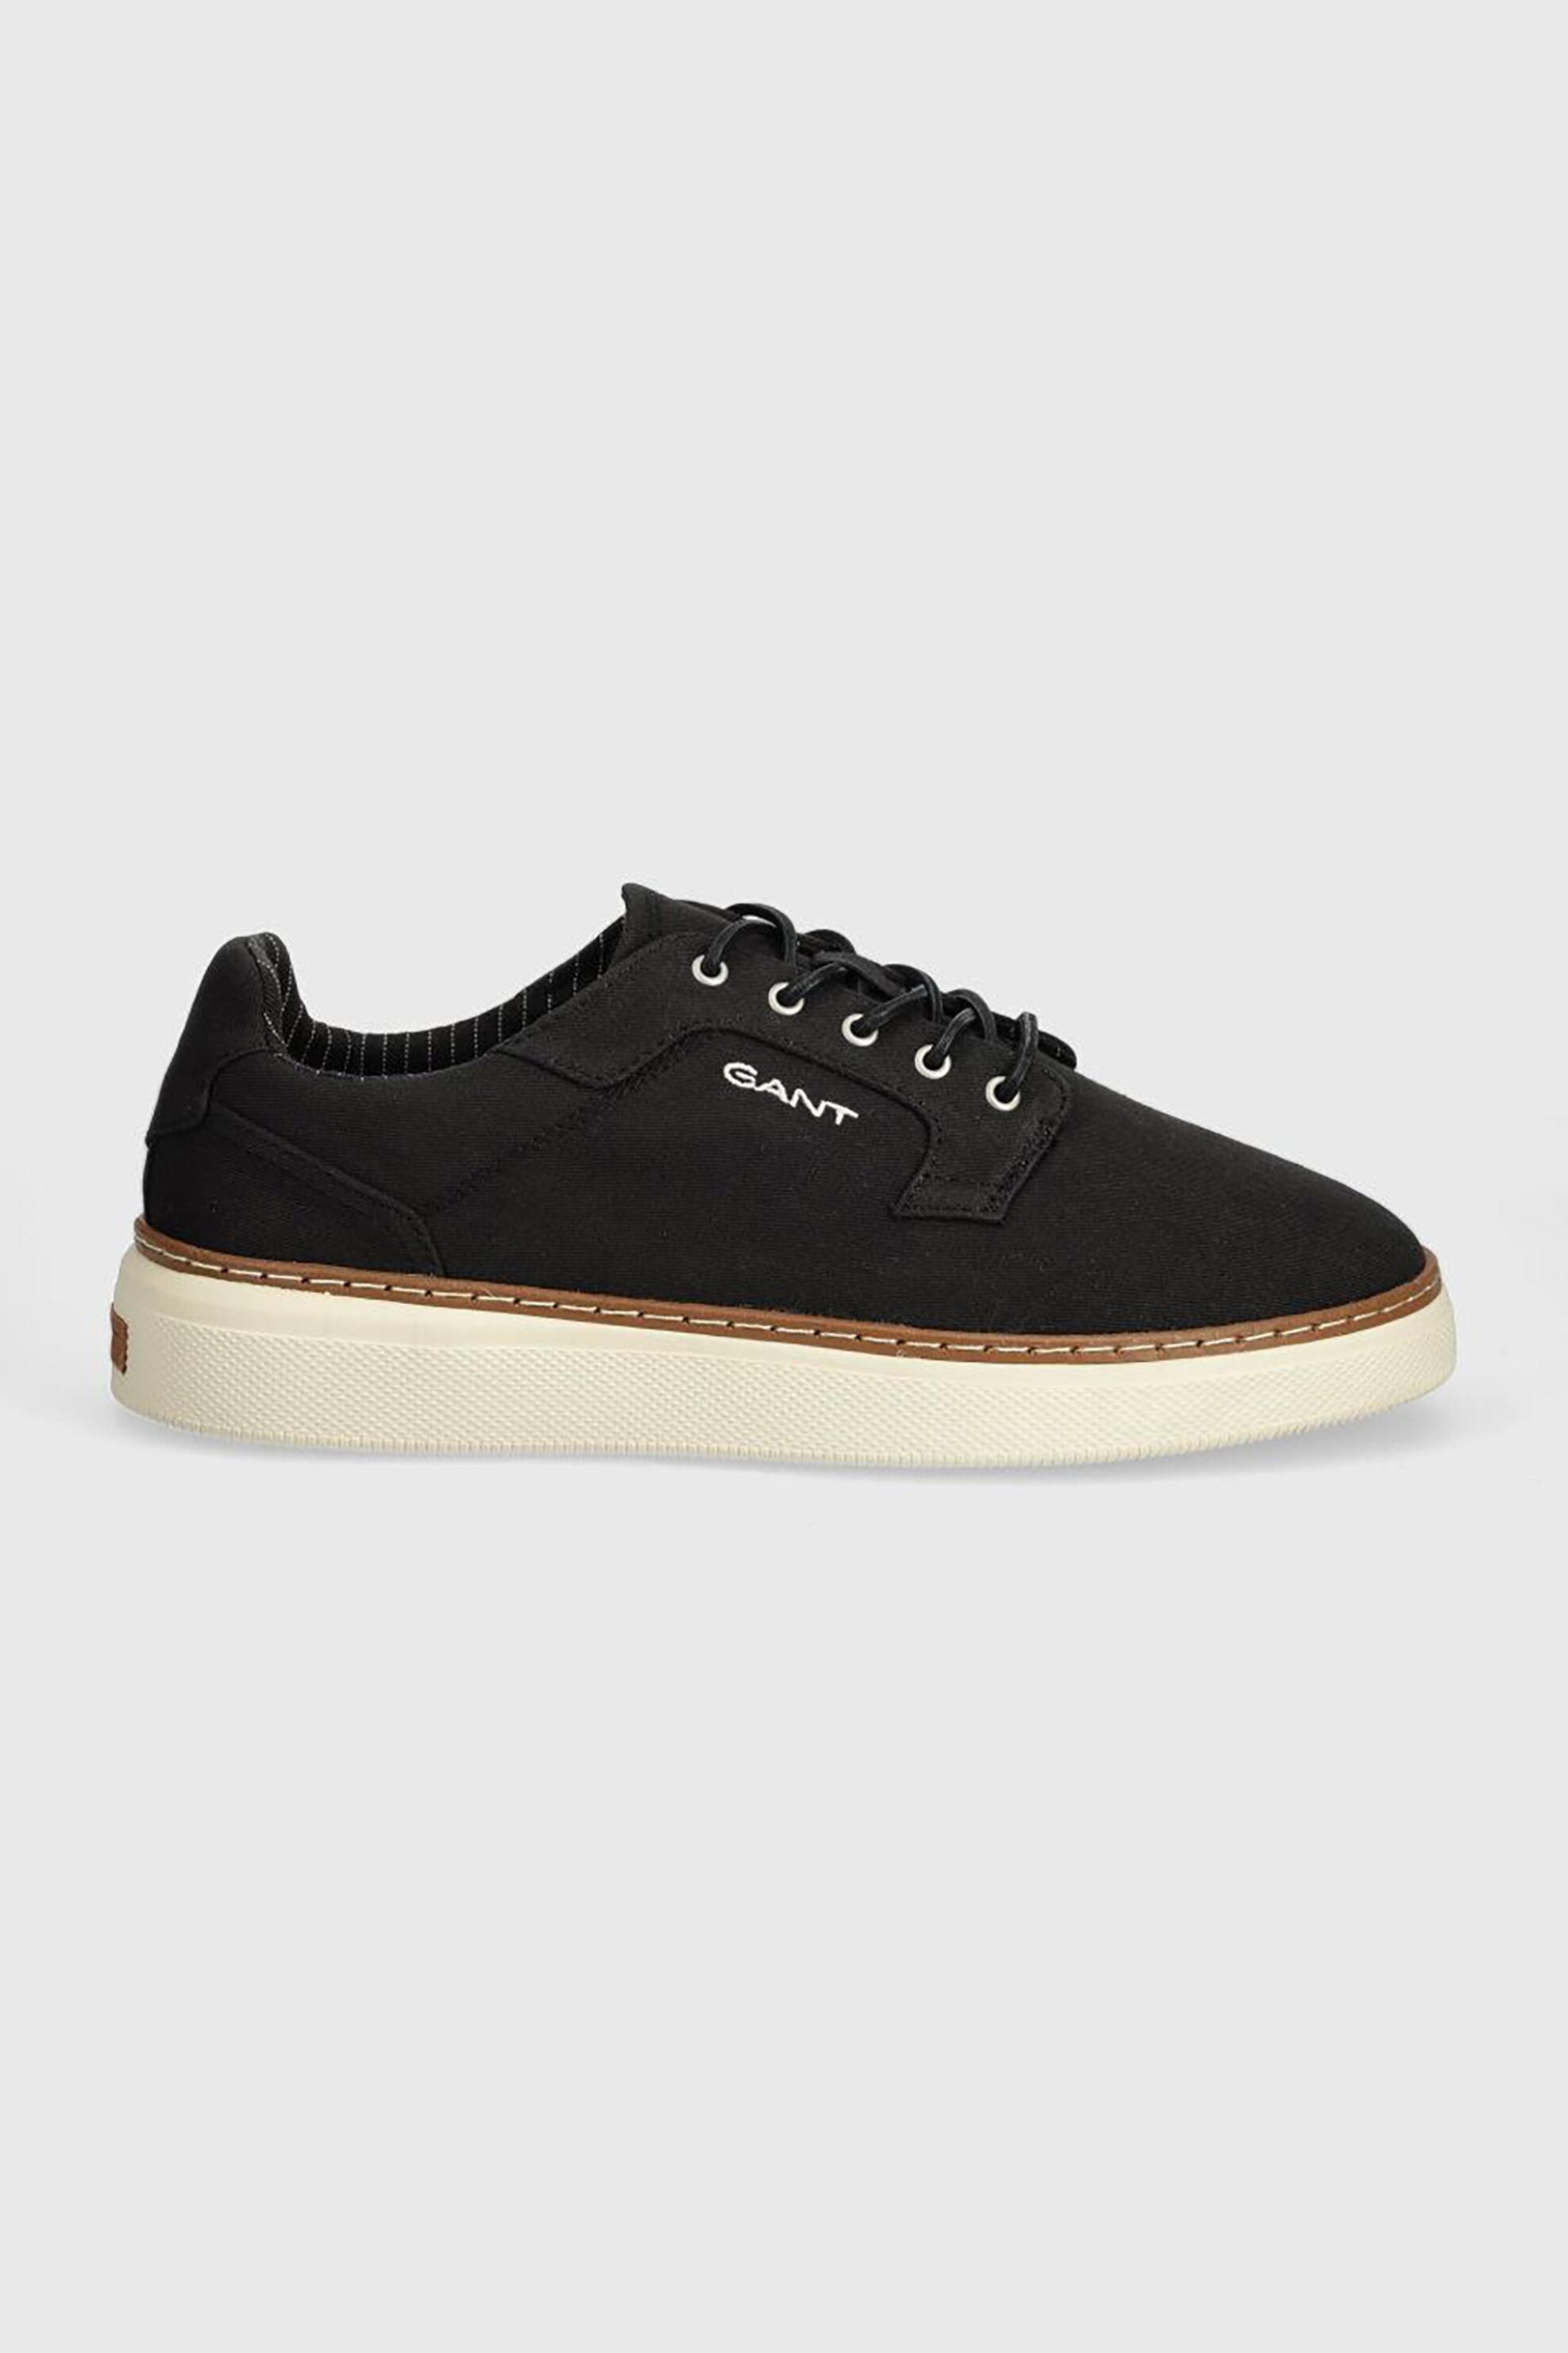 Ανδρική Μόδα > Ανδρικά Παπούτσια > Ανδρικά Sneakers Gant ανδρικά sneakers "San Prep" - 28638610 Μαύρο